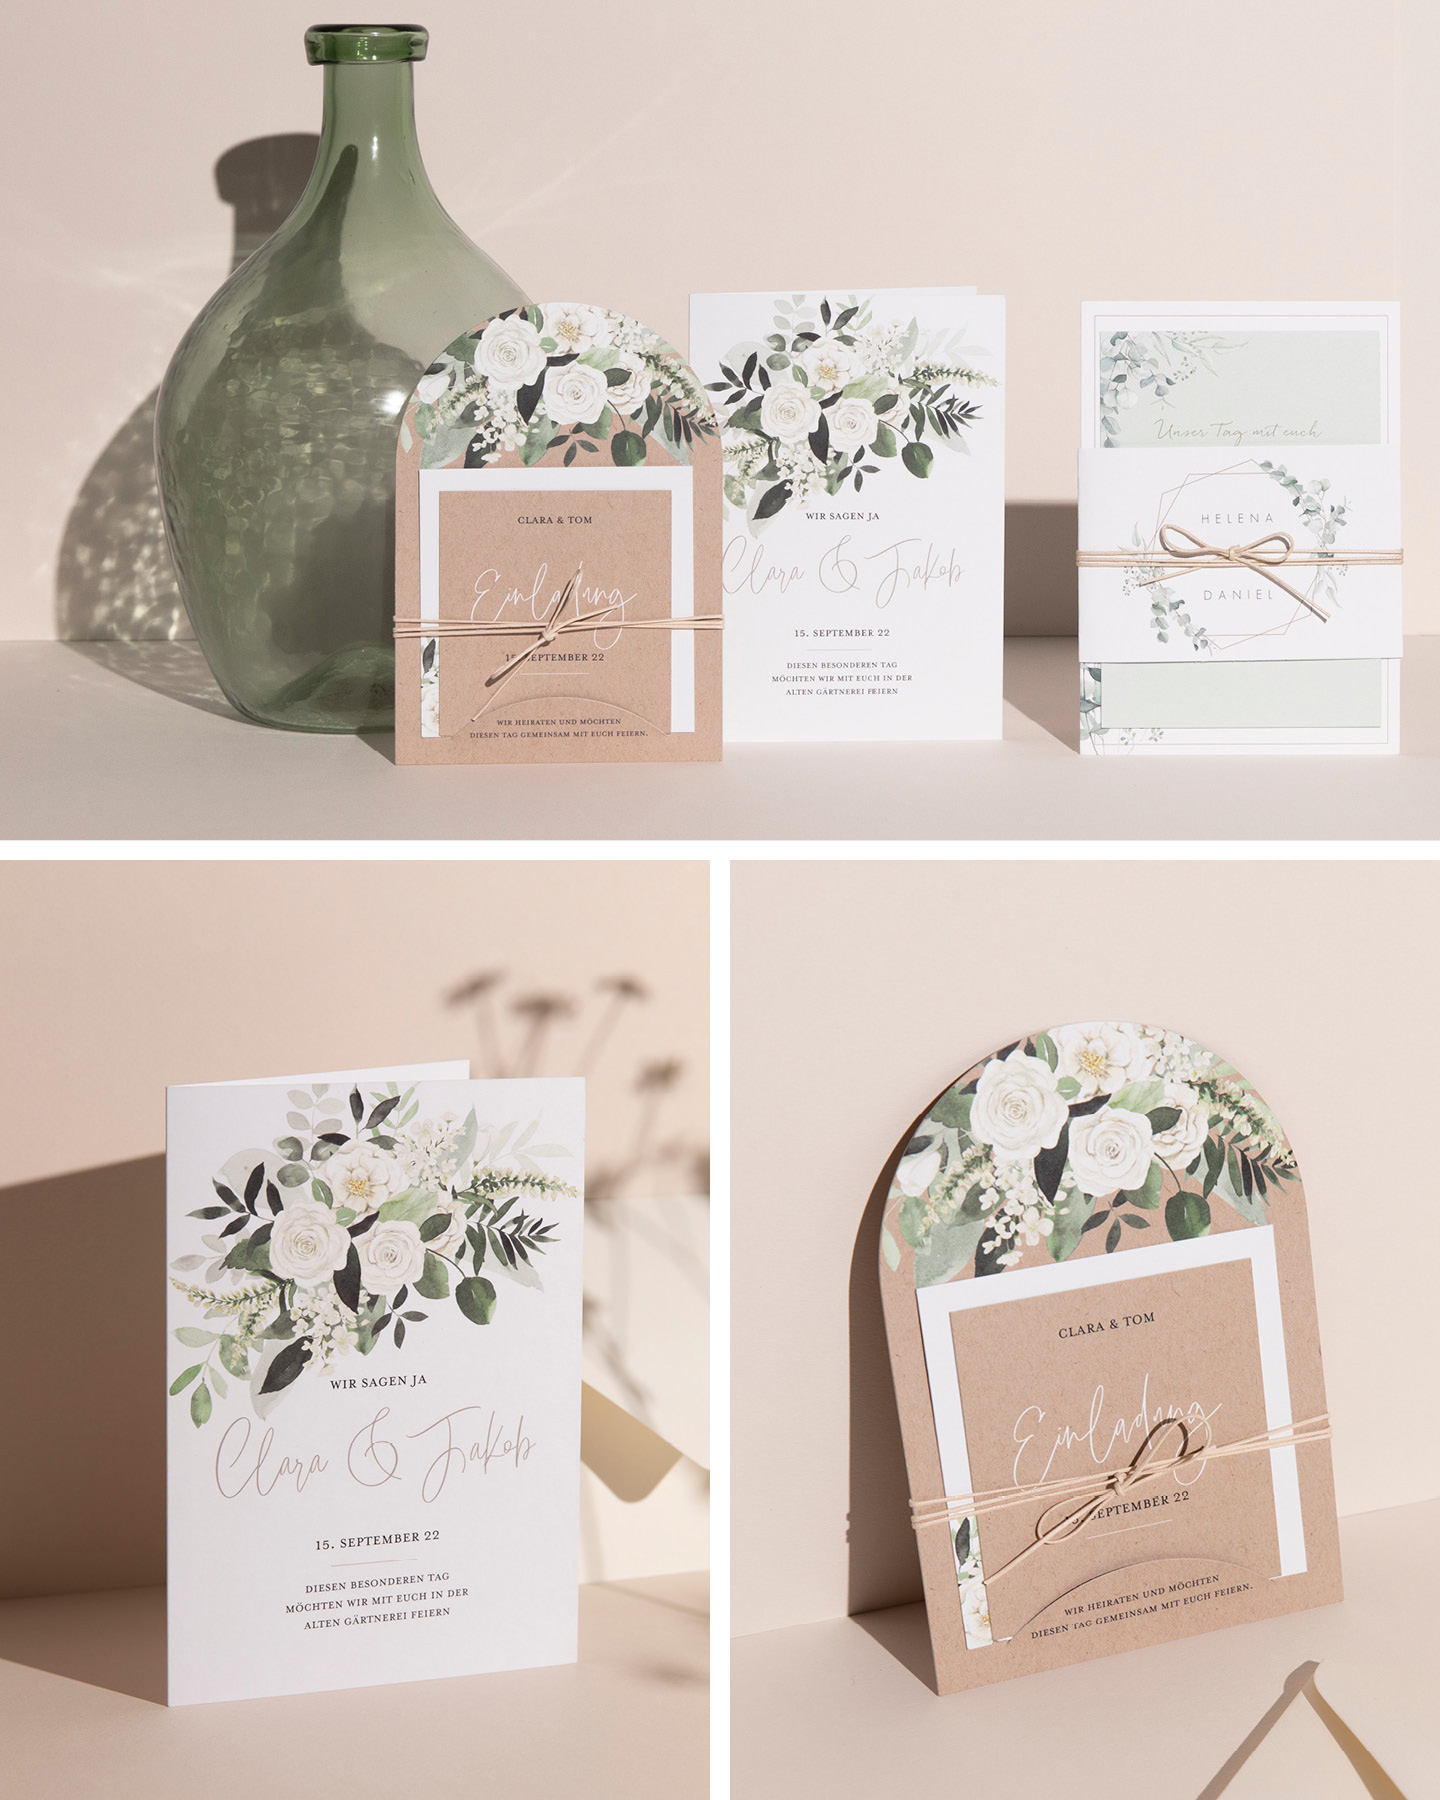 Drei Hochzeitseinladungen mit Greenery & weißen Blumen Illustrationen lehnen an hellem Hintergrund.